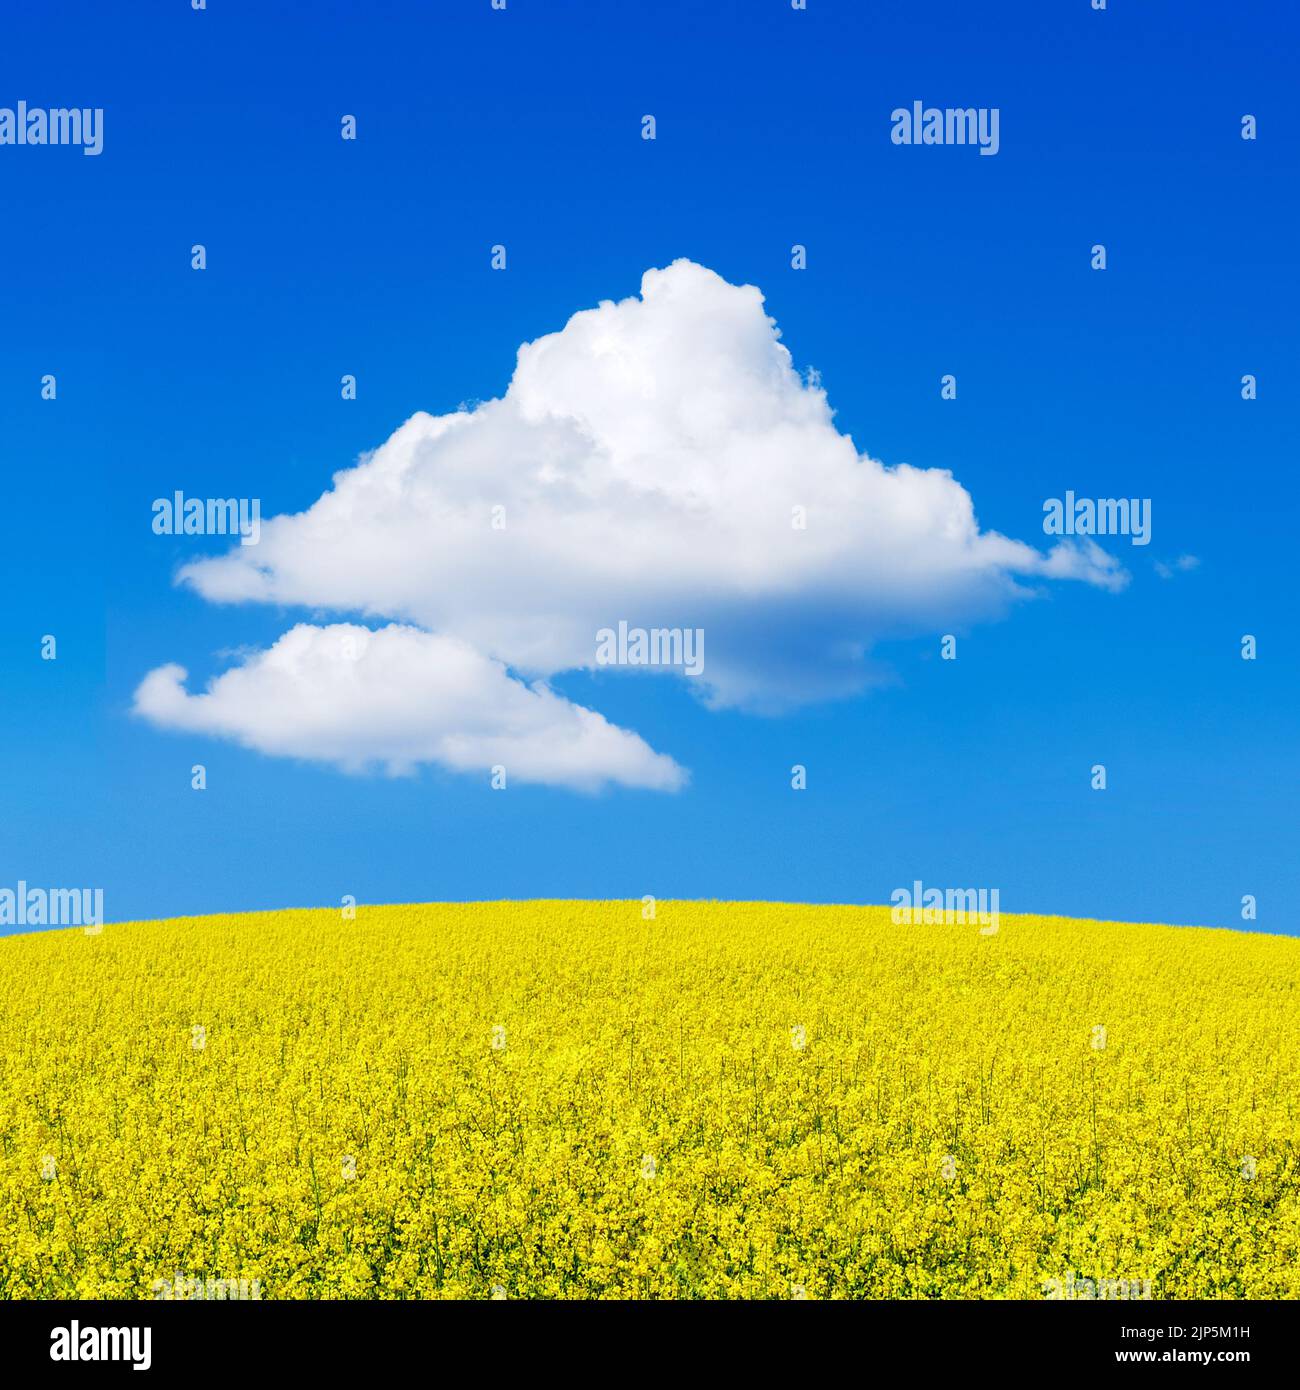 Campo di senape gialla, paesaggio di colza. Nuvola bianca di cumuli nel cielo blu. Foto Stock